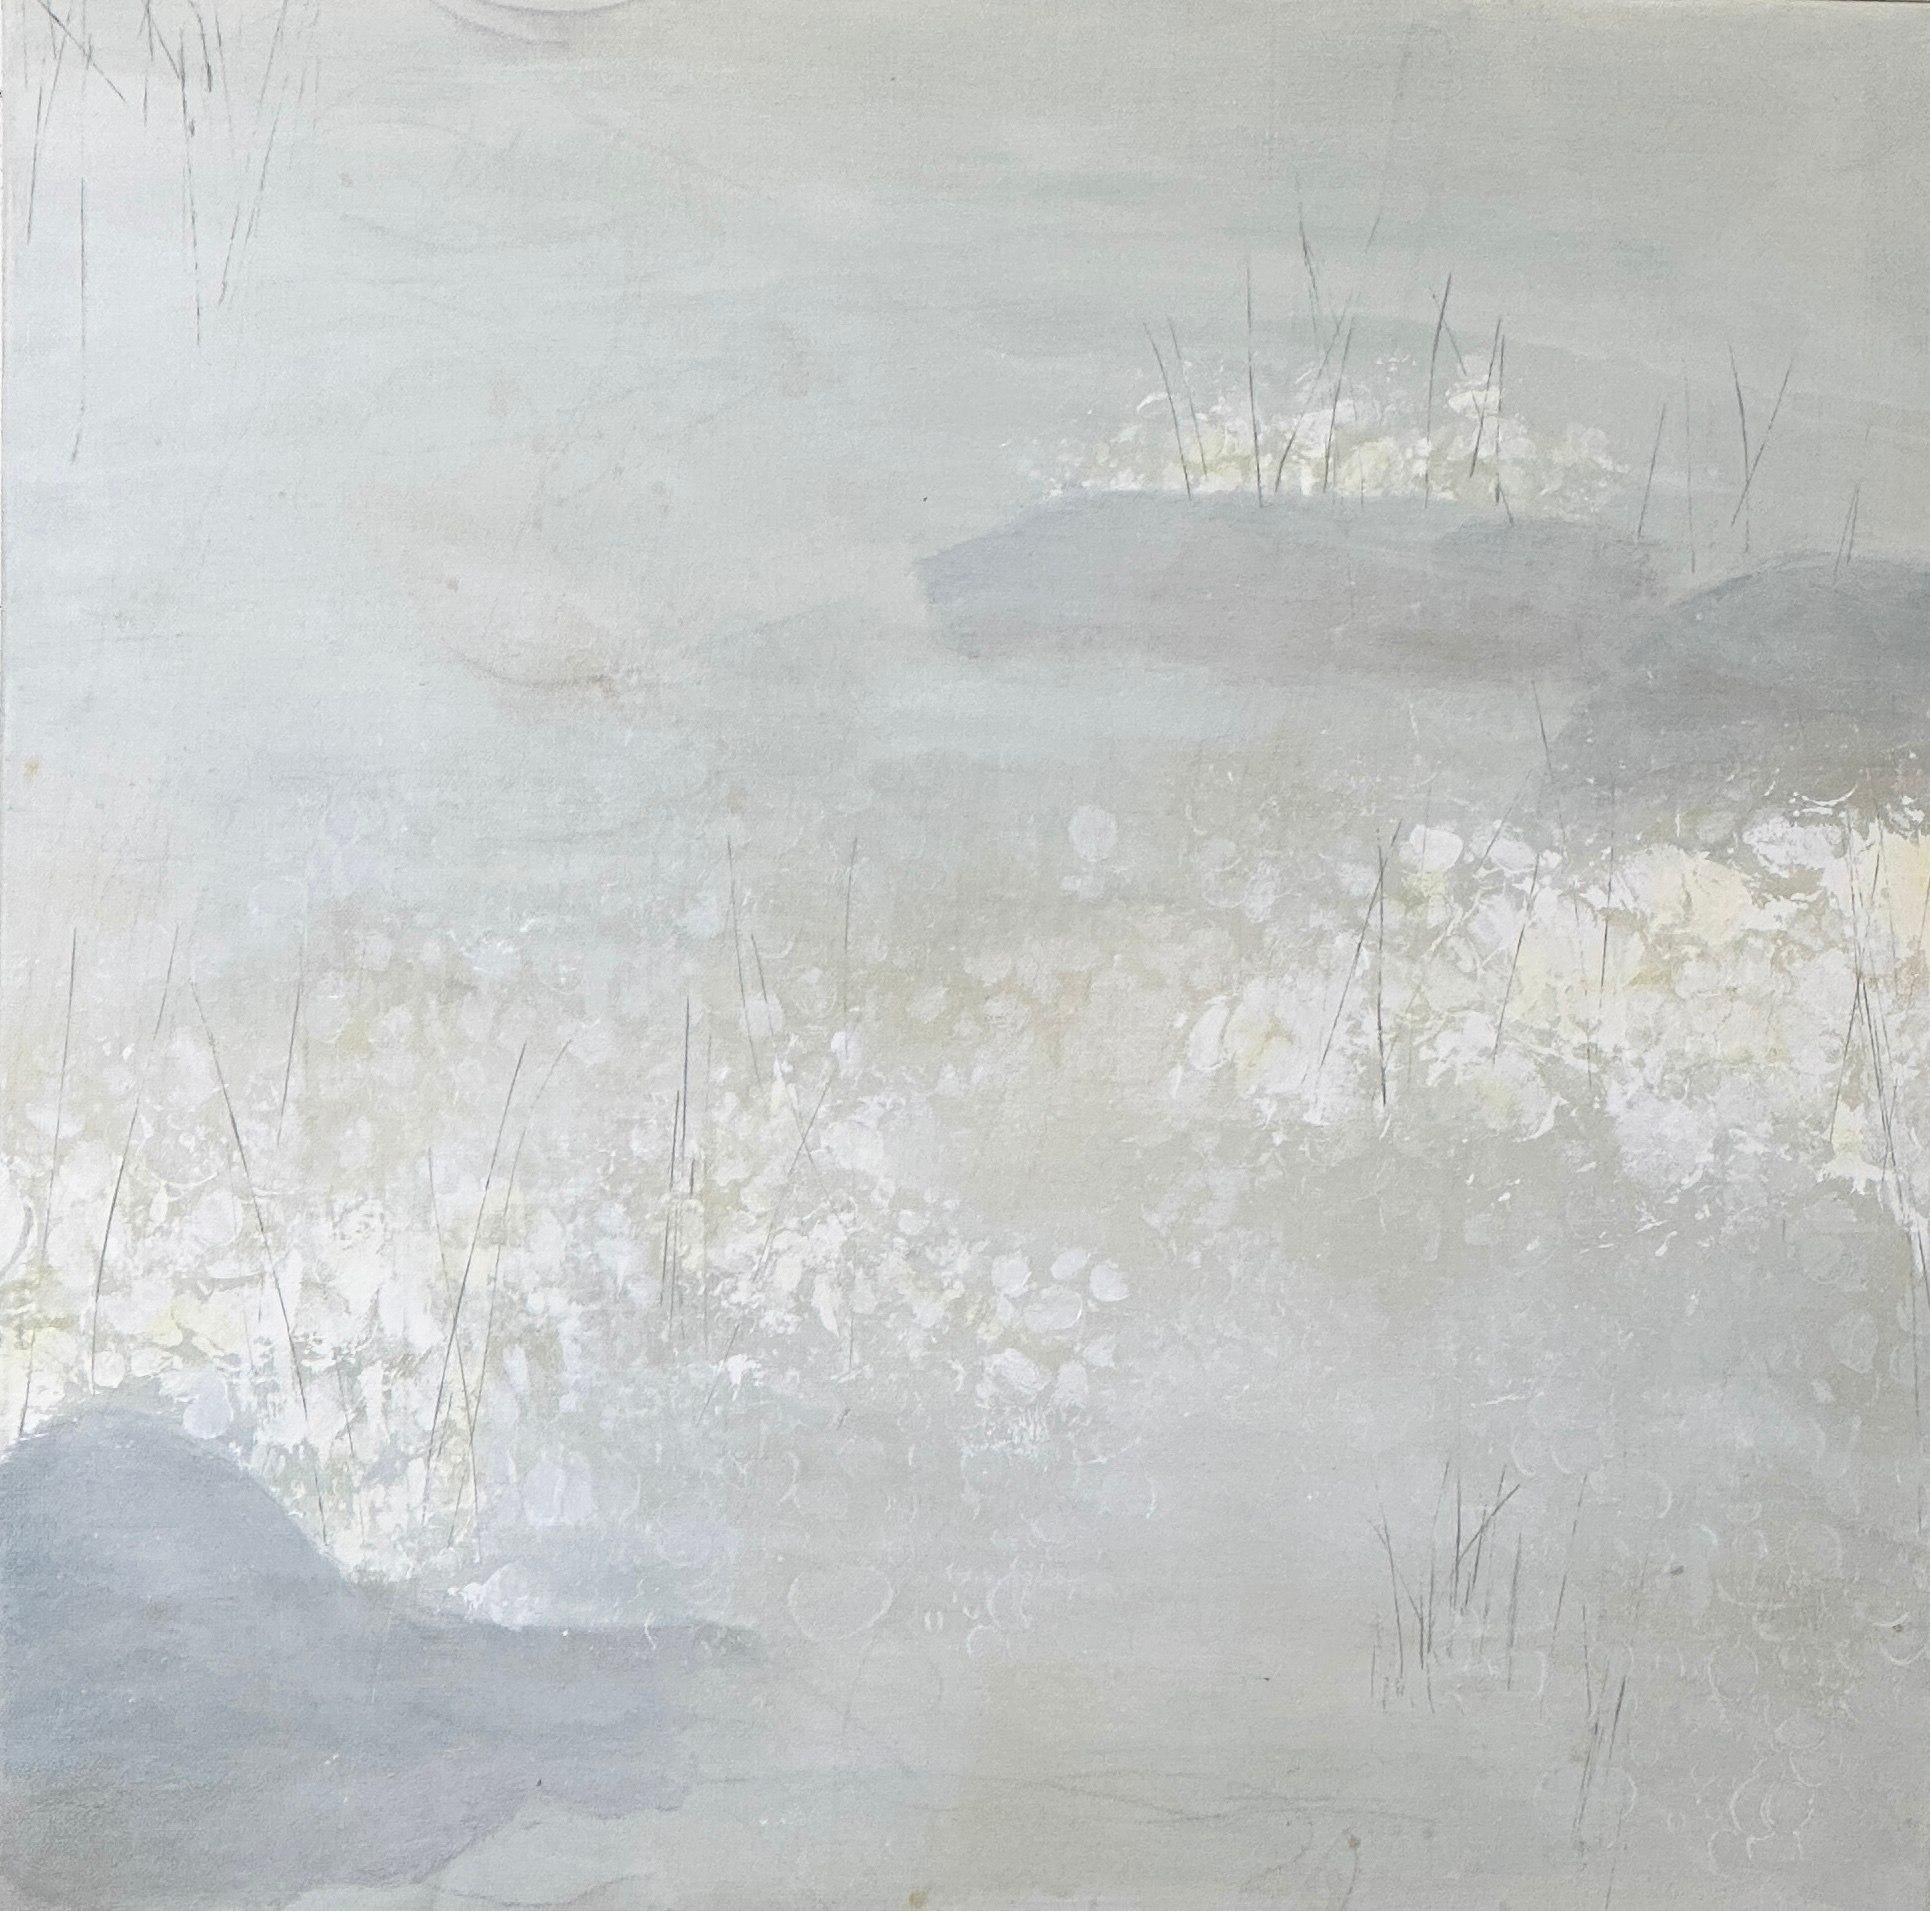 Juanita Bellavance  Abstract Painting – Der Teich am 5. Februar, Fliederteich, neutrale, weiche Kunst